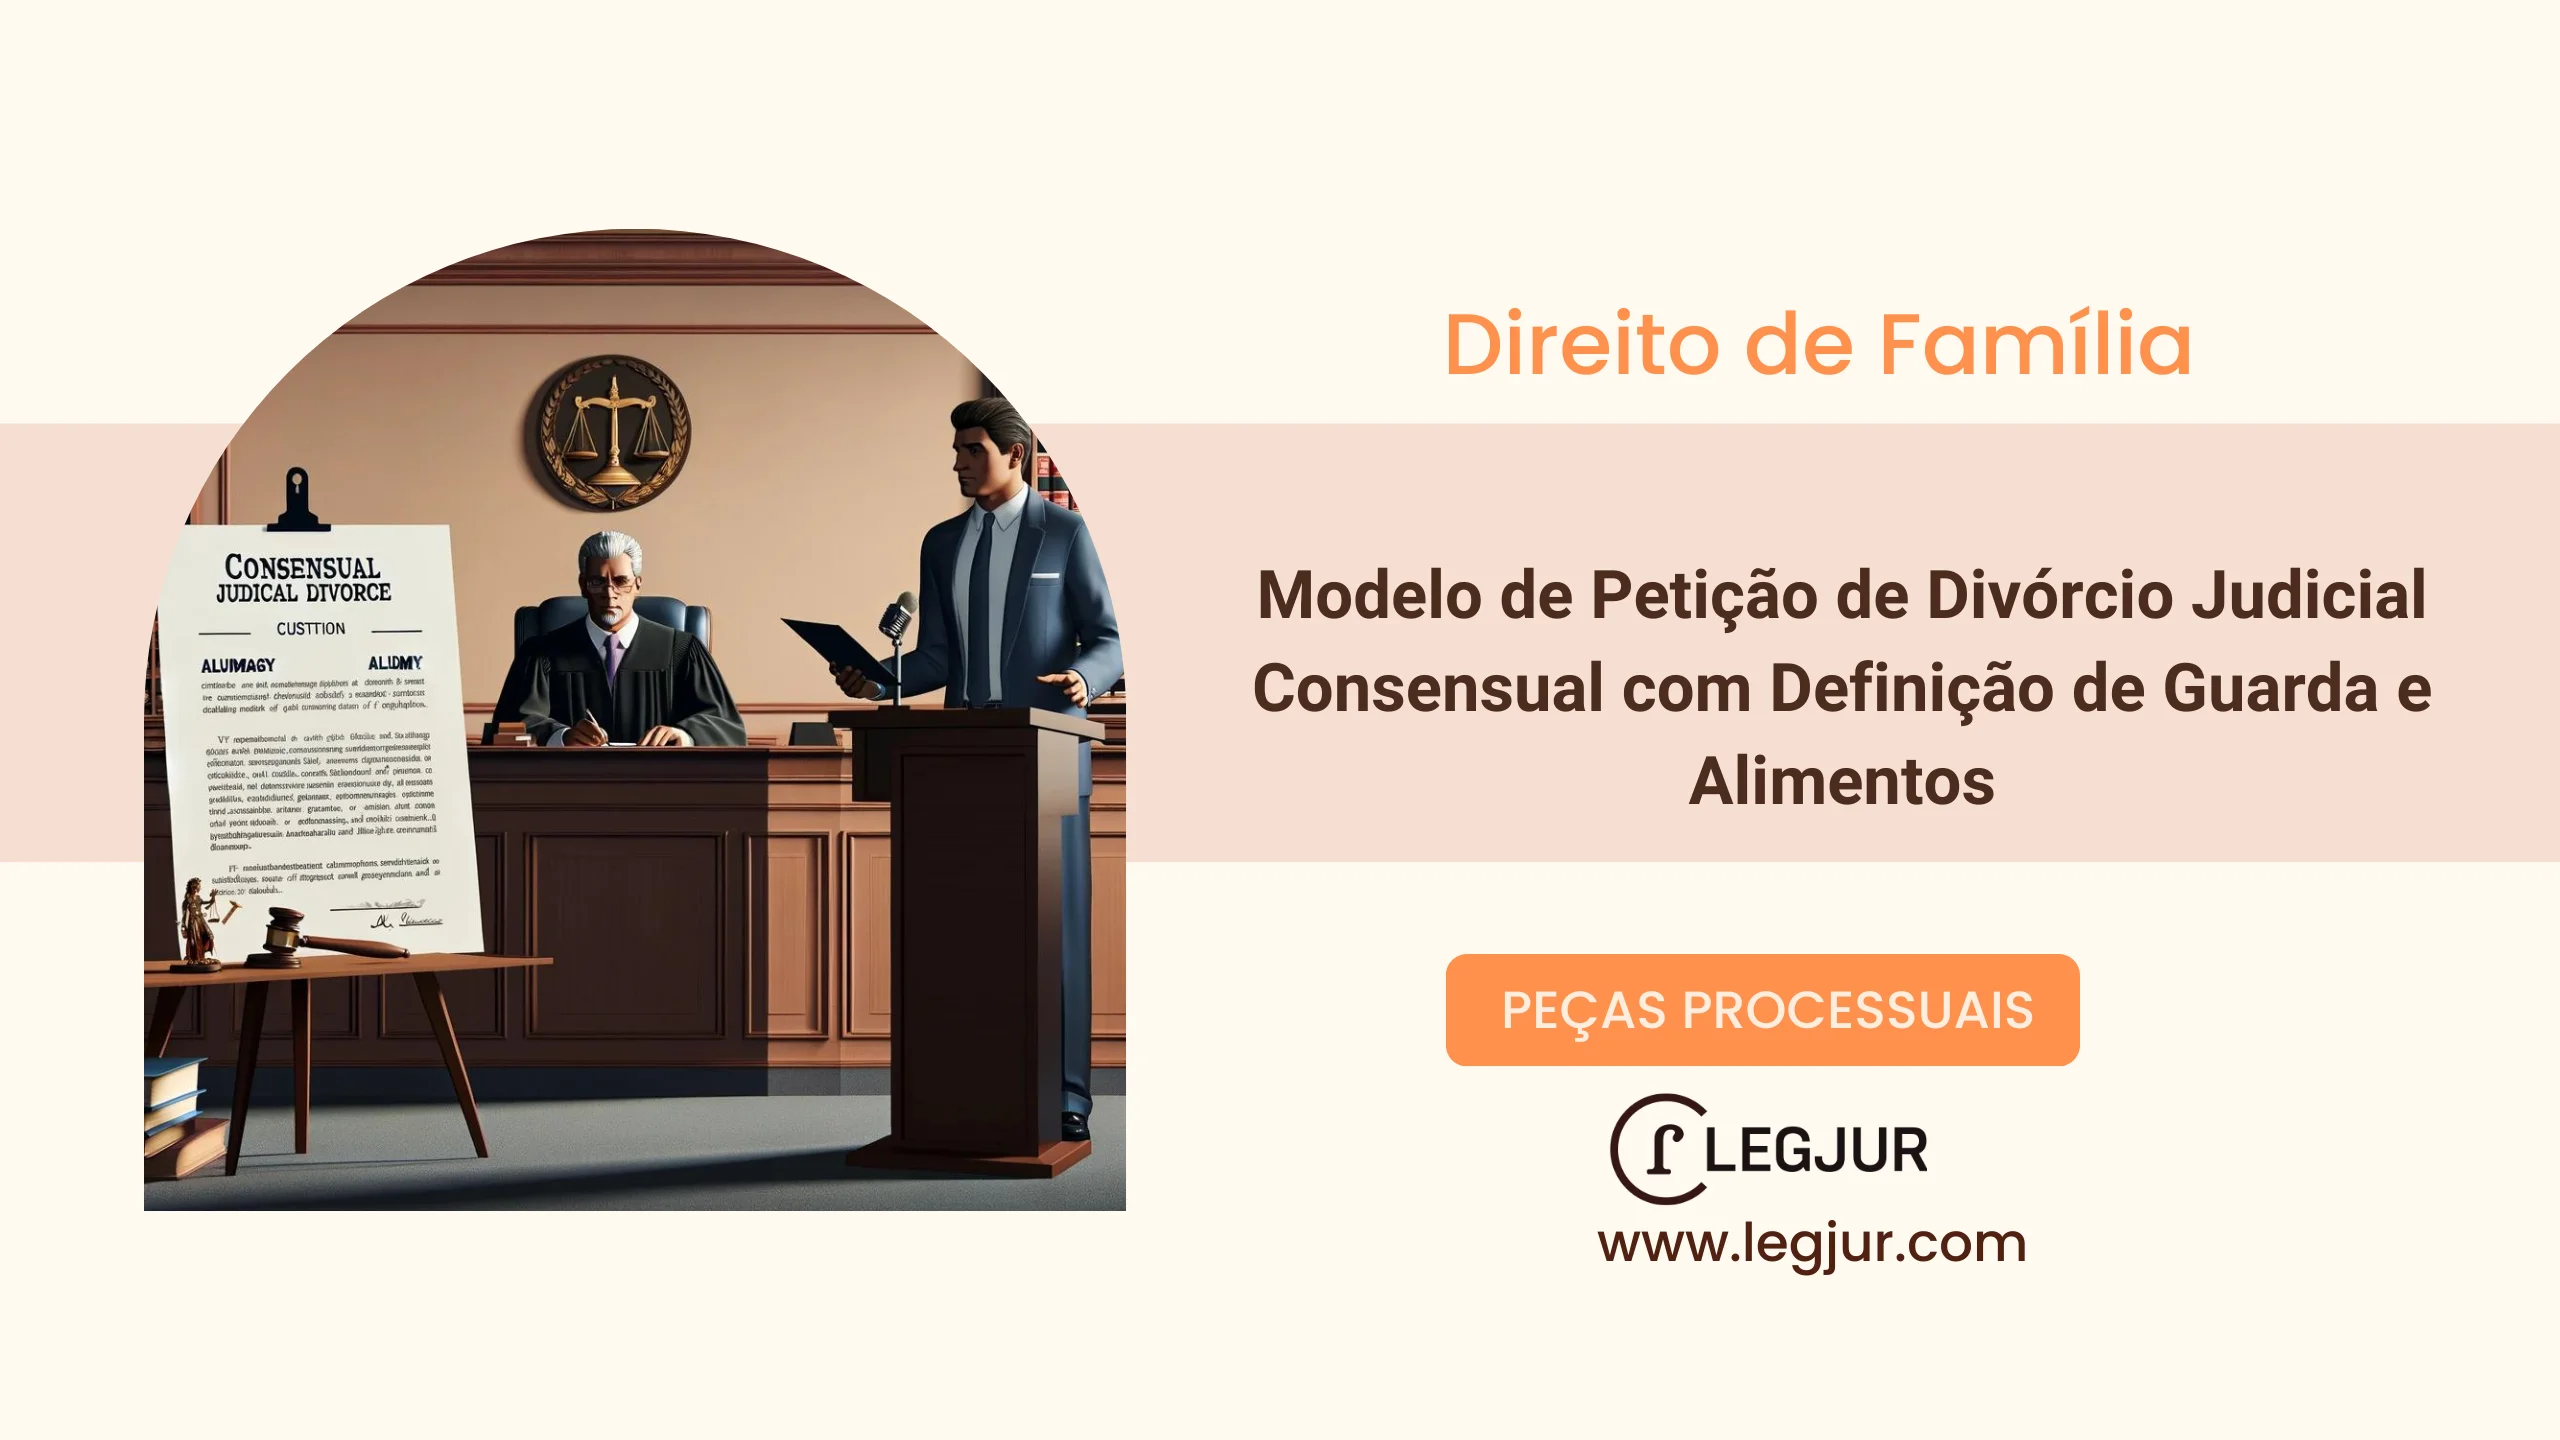 Modelo de Petição de Divórcio Judicial Consensual com Definição de Guarda e Alimentos